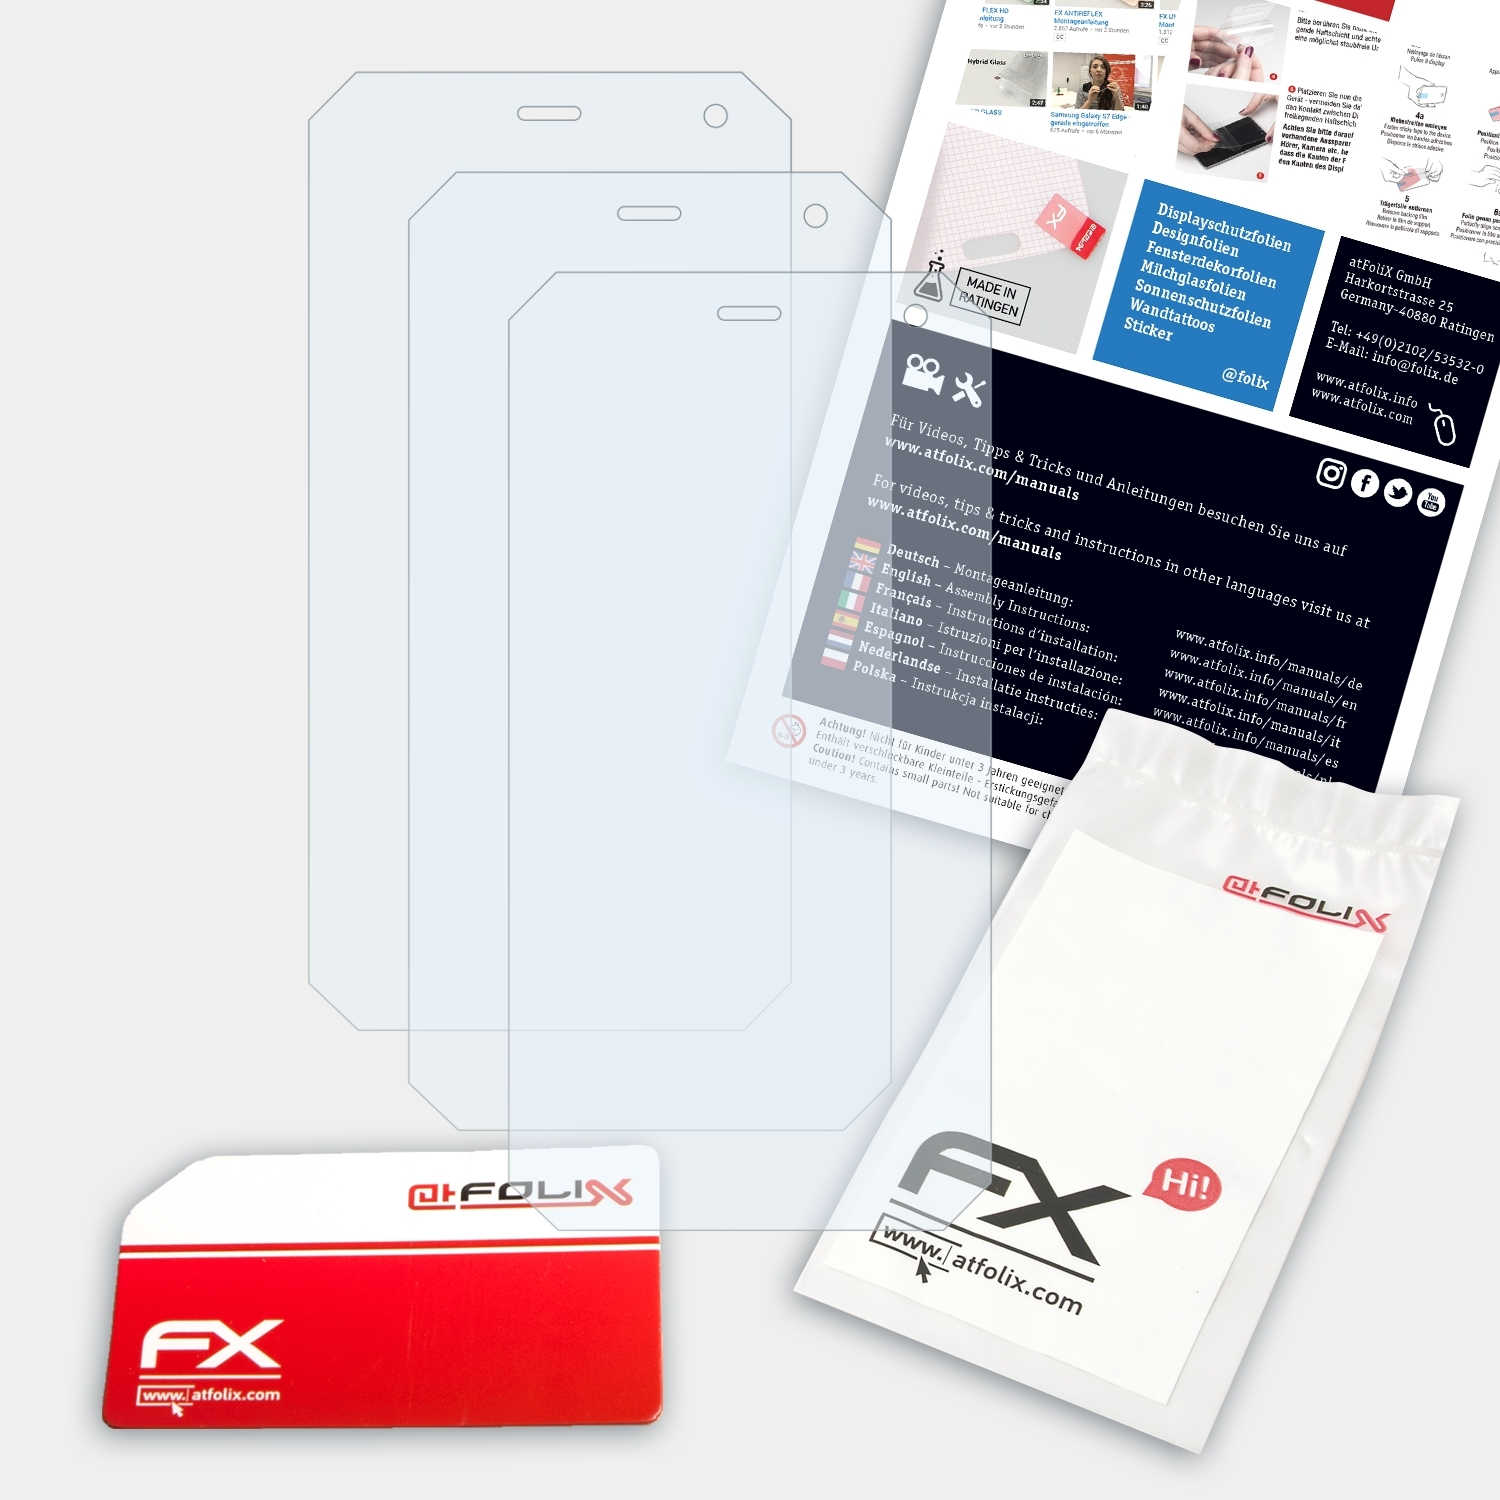 ATFOLIX 3x FX-Clear Displayschutz(für myPhone Energy) Hammer